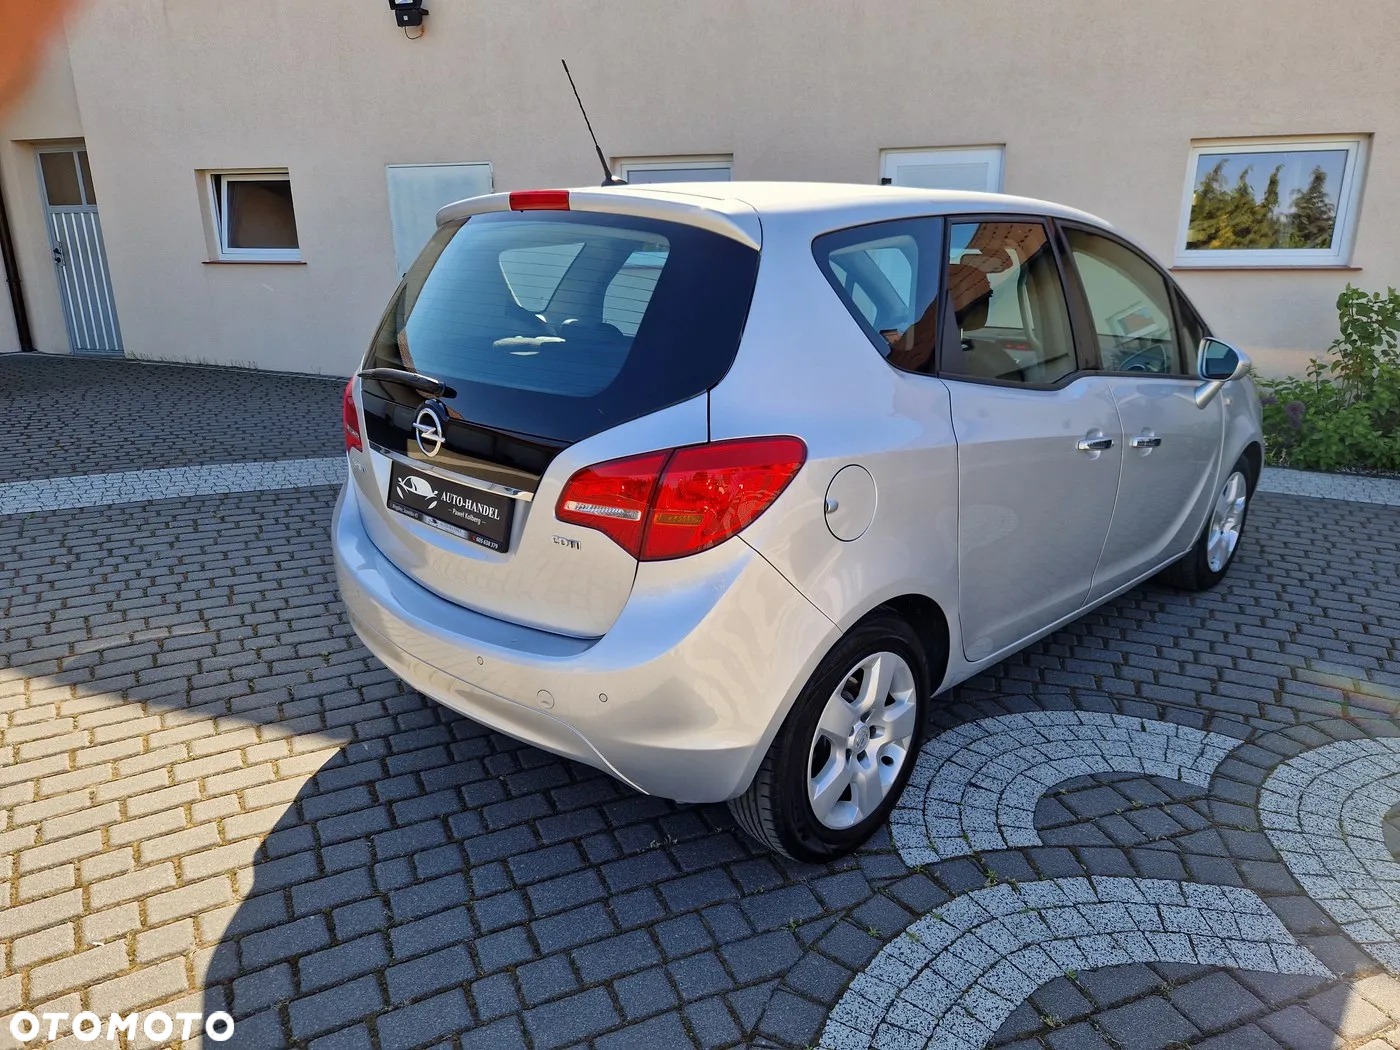 Opel Meriva 1.7 CDTI Automatik Innovation - 7